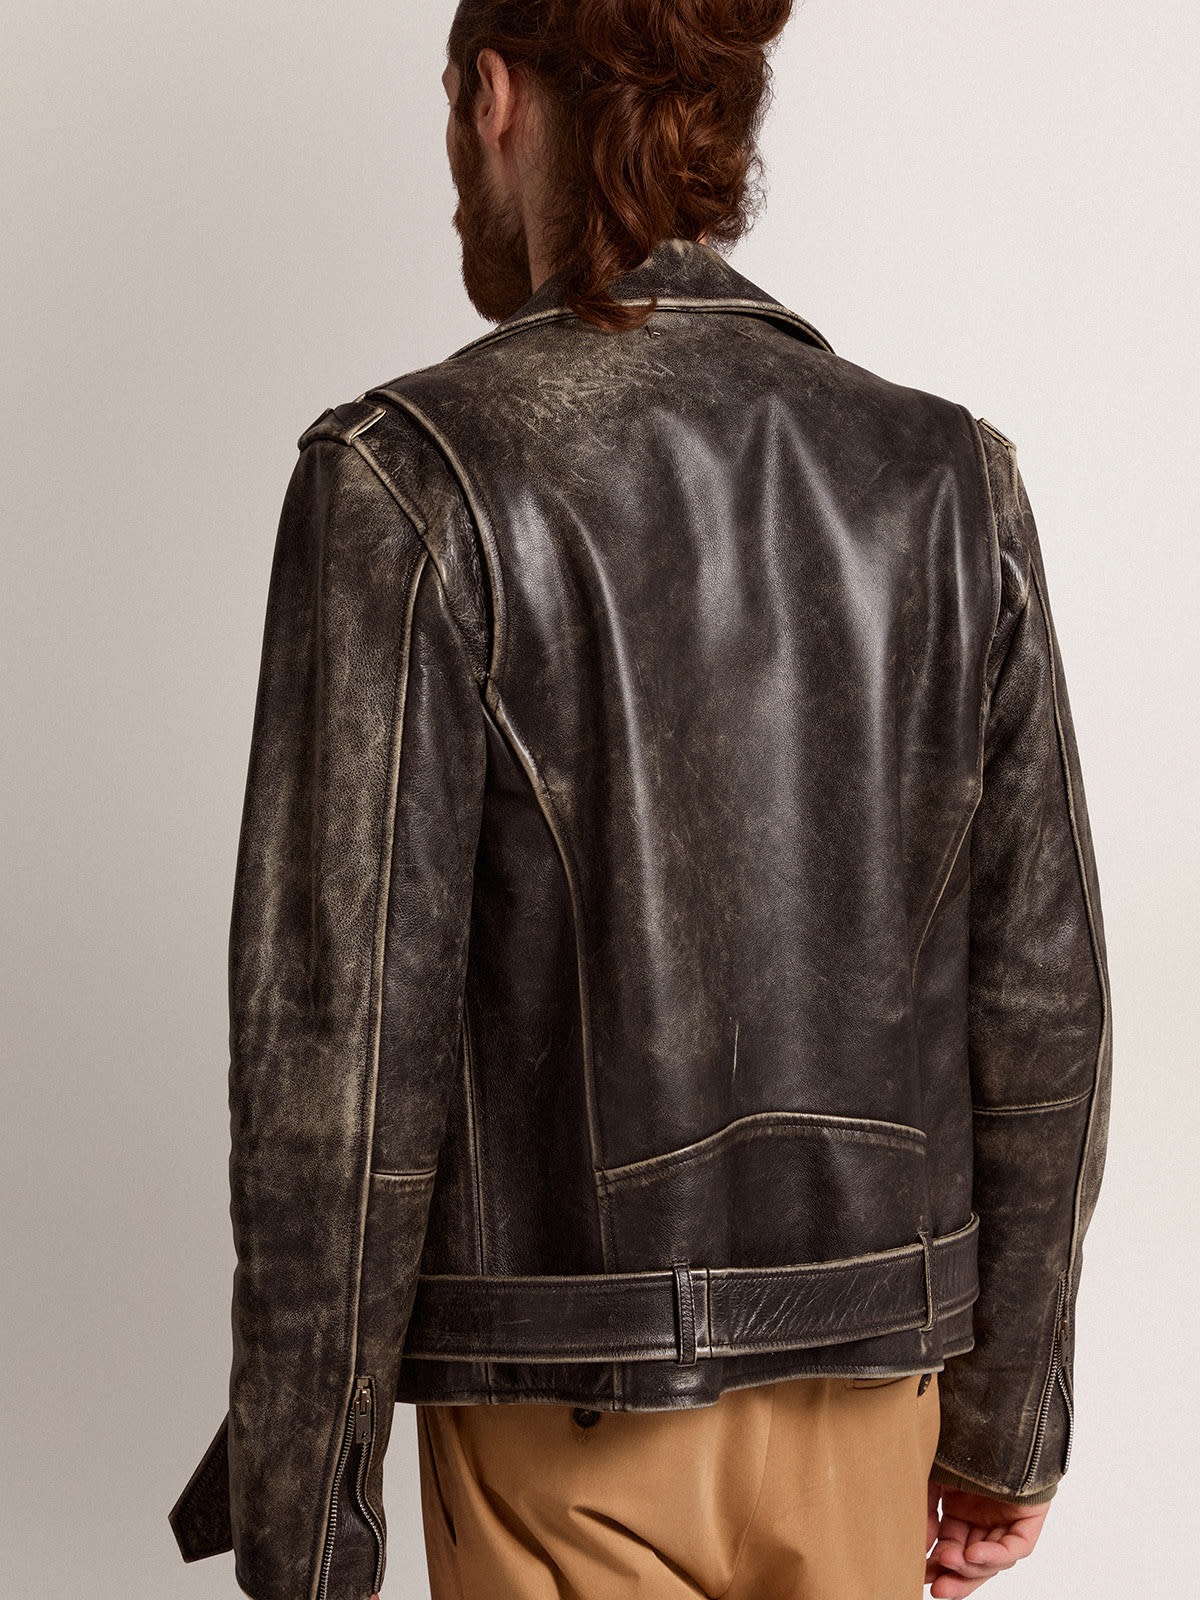 Golden Goose - Men’s biker jacket in distressed leather in 